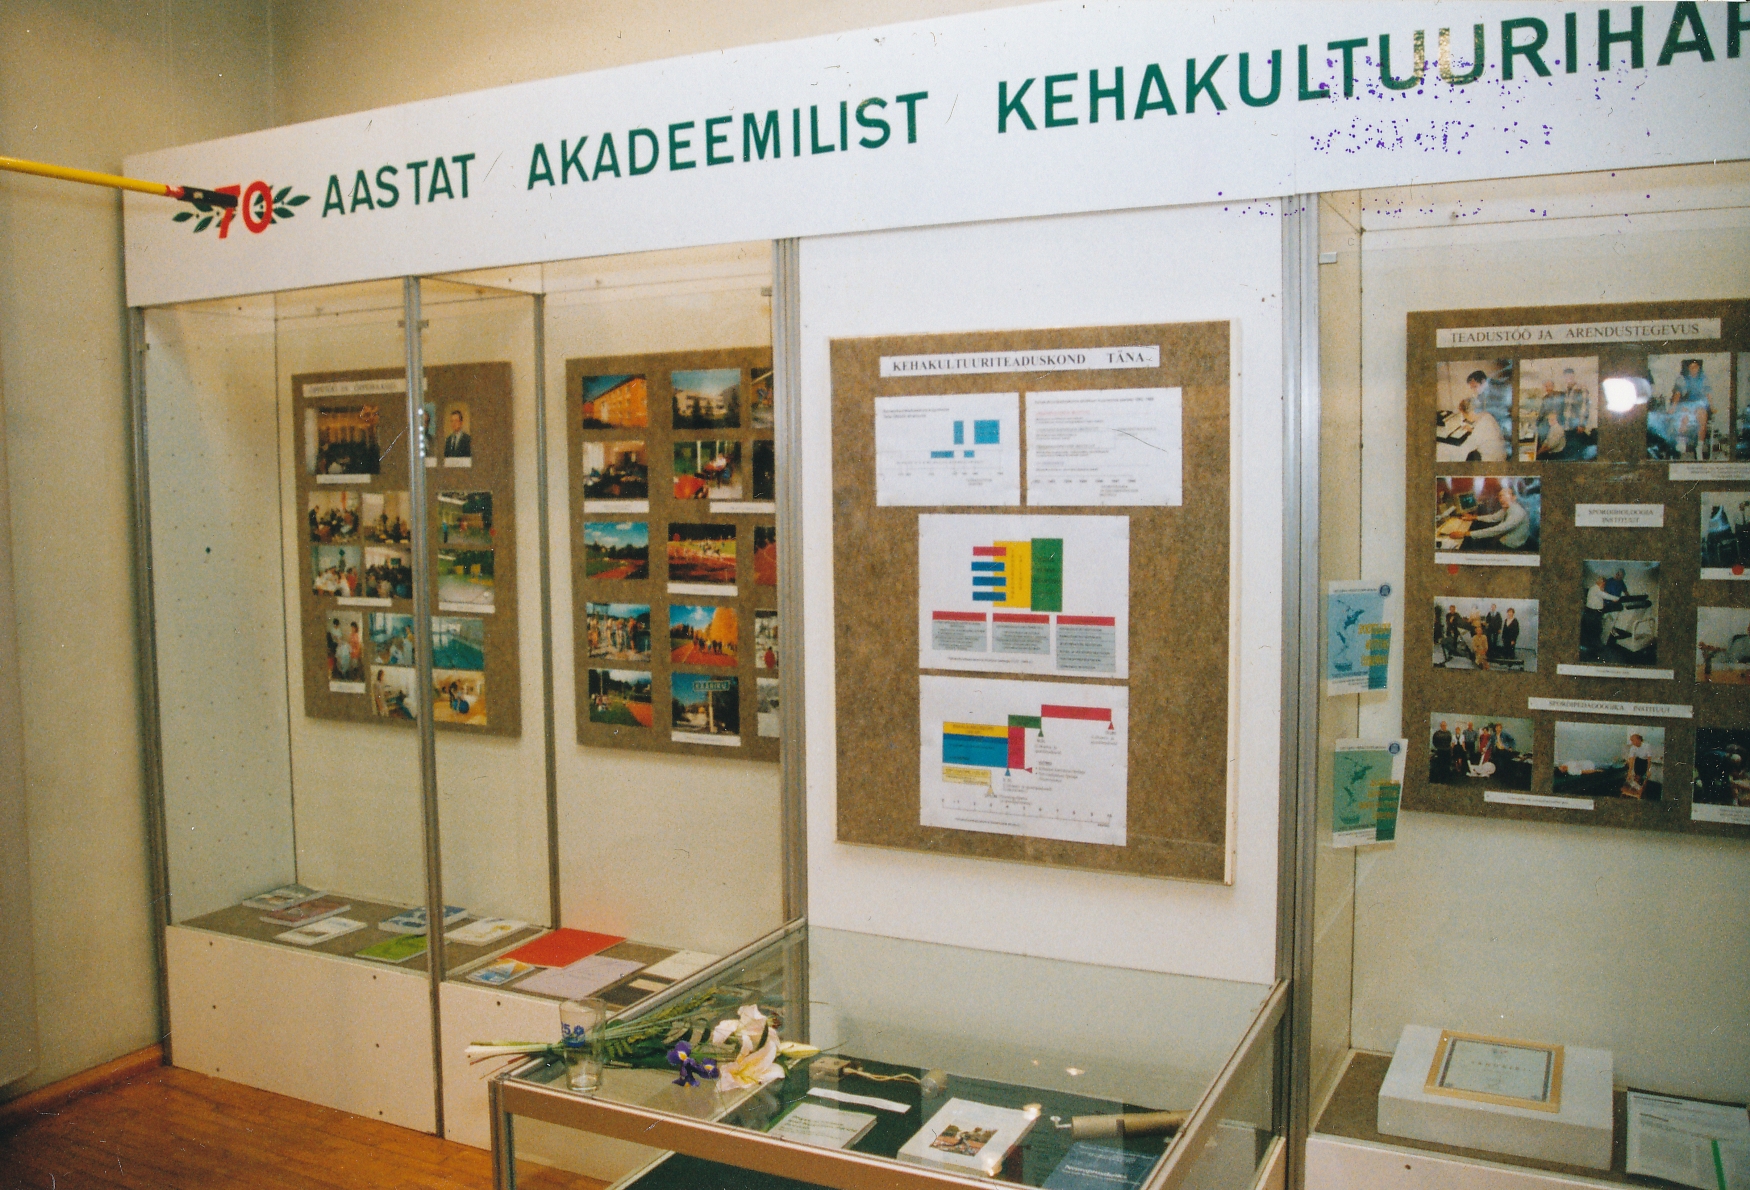 ESM näitus 70 aastat akadeemilist kehakultuuriharidust Eestis